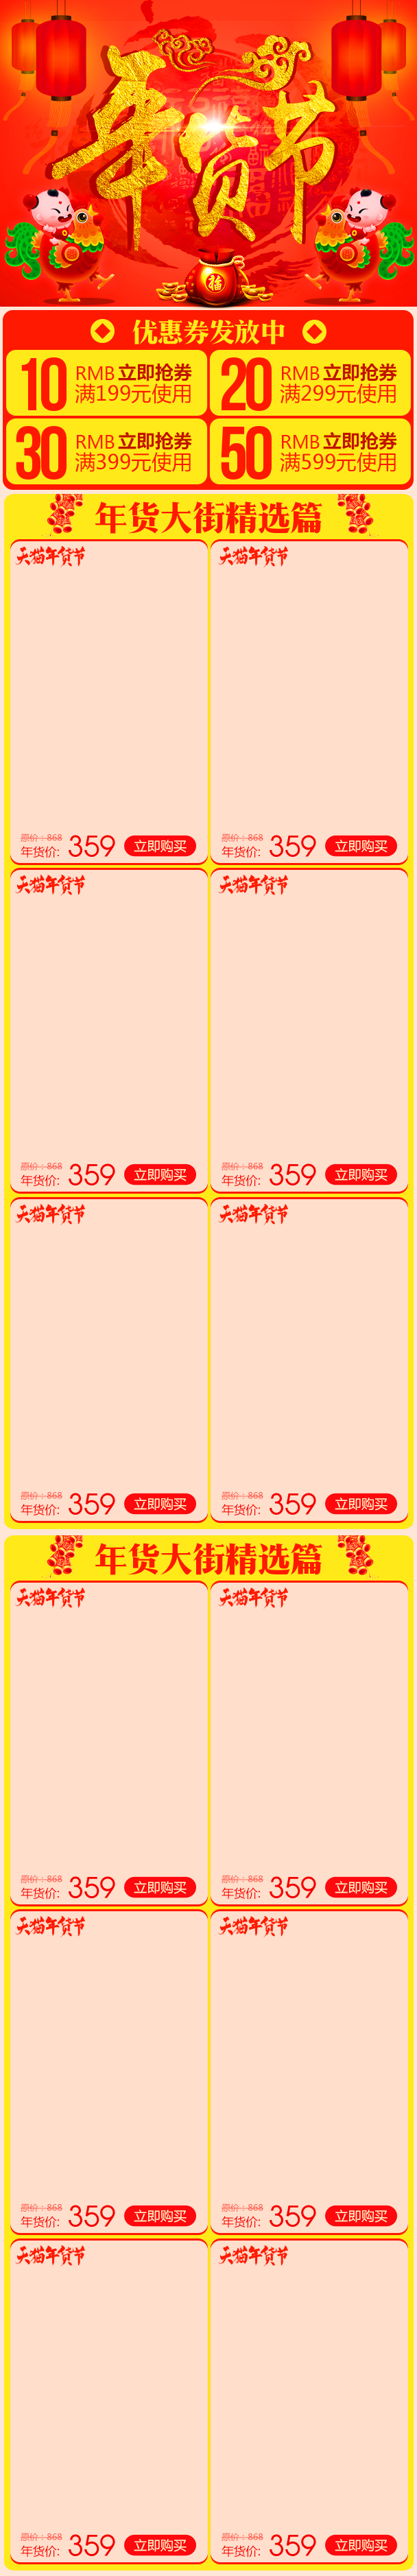 红色喜庆年货节手机数码无线端首页模板PSD